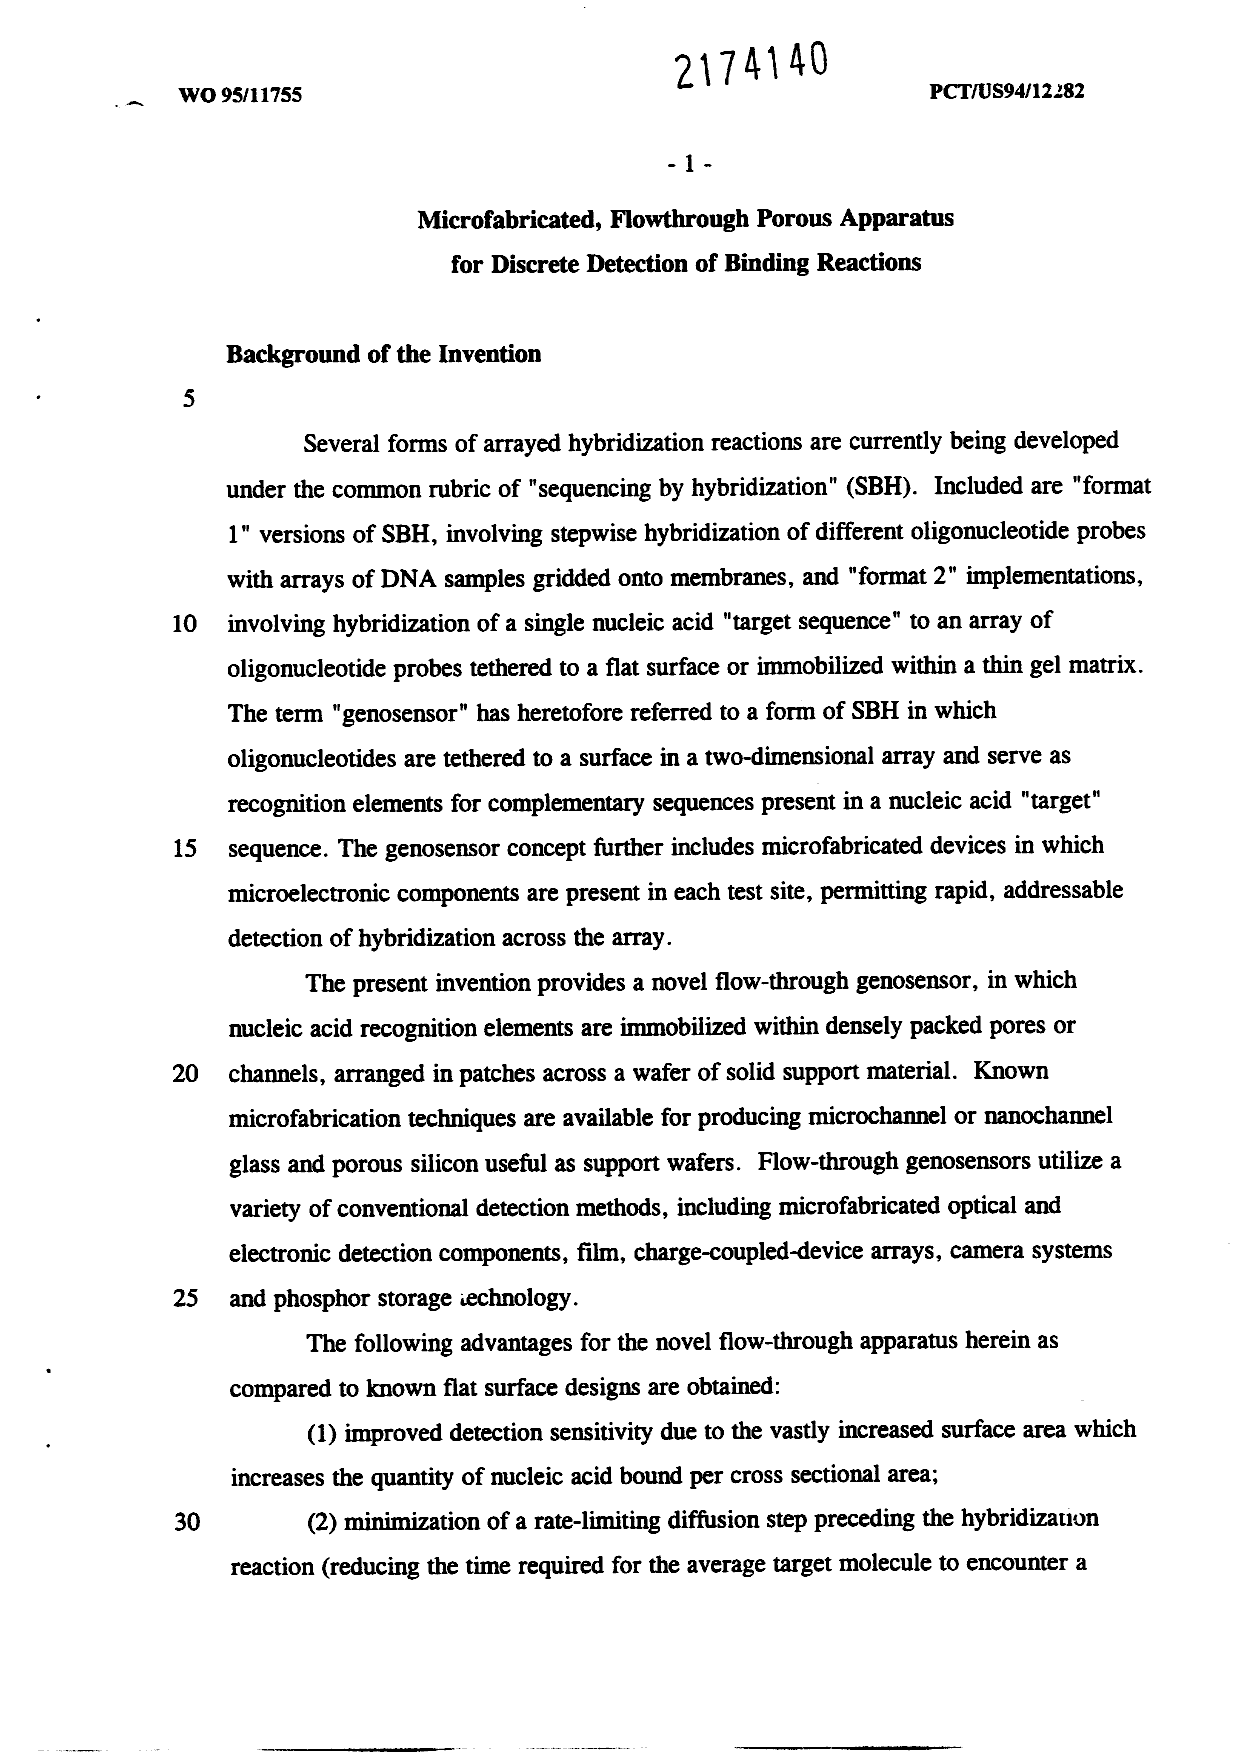 Canadian Patent Document 2174140. Description 20030106. Image 1 of 42